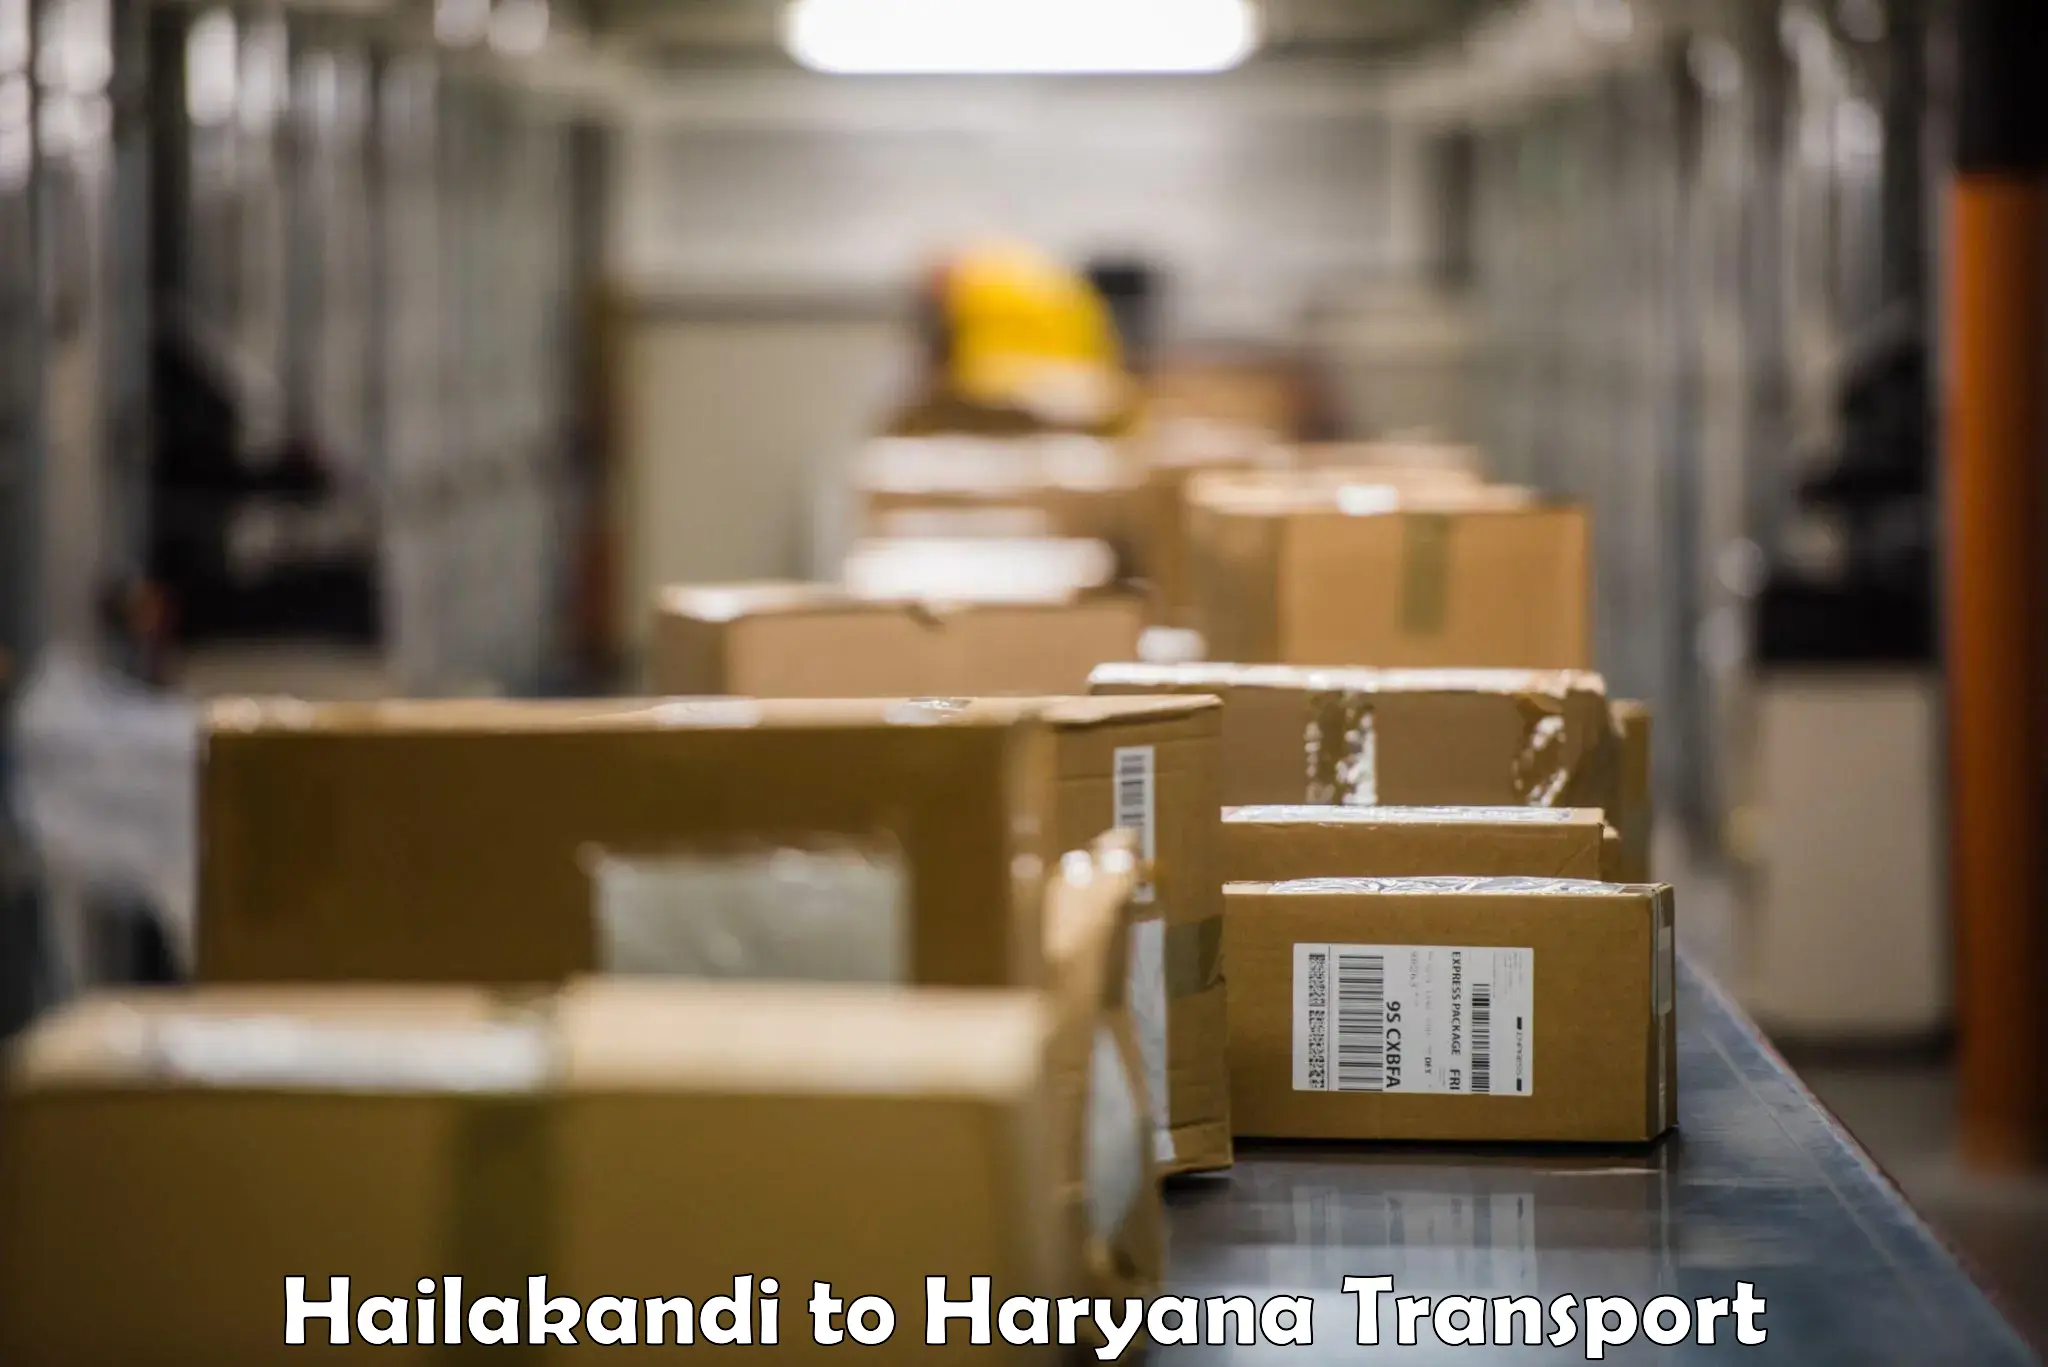 Daily parcel service transport Hailakandi to NCR Haryana